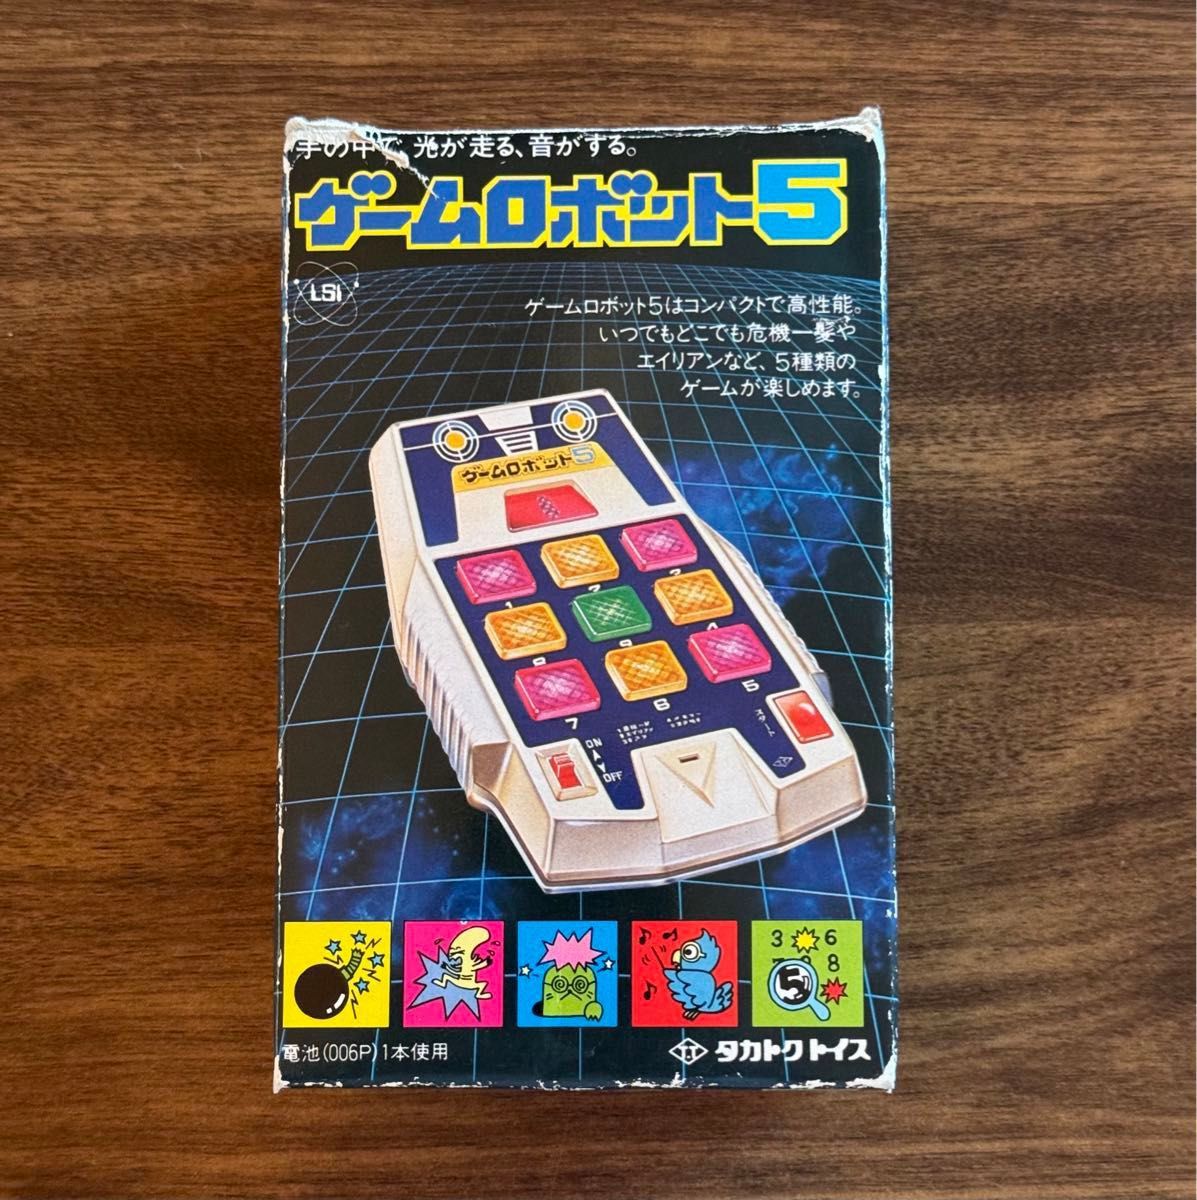 ゲームロボット５　タカトクトイス　完動美品　箱/説明書付　昭和　レトロ　おもちゃ 当時物